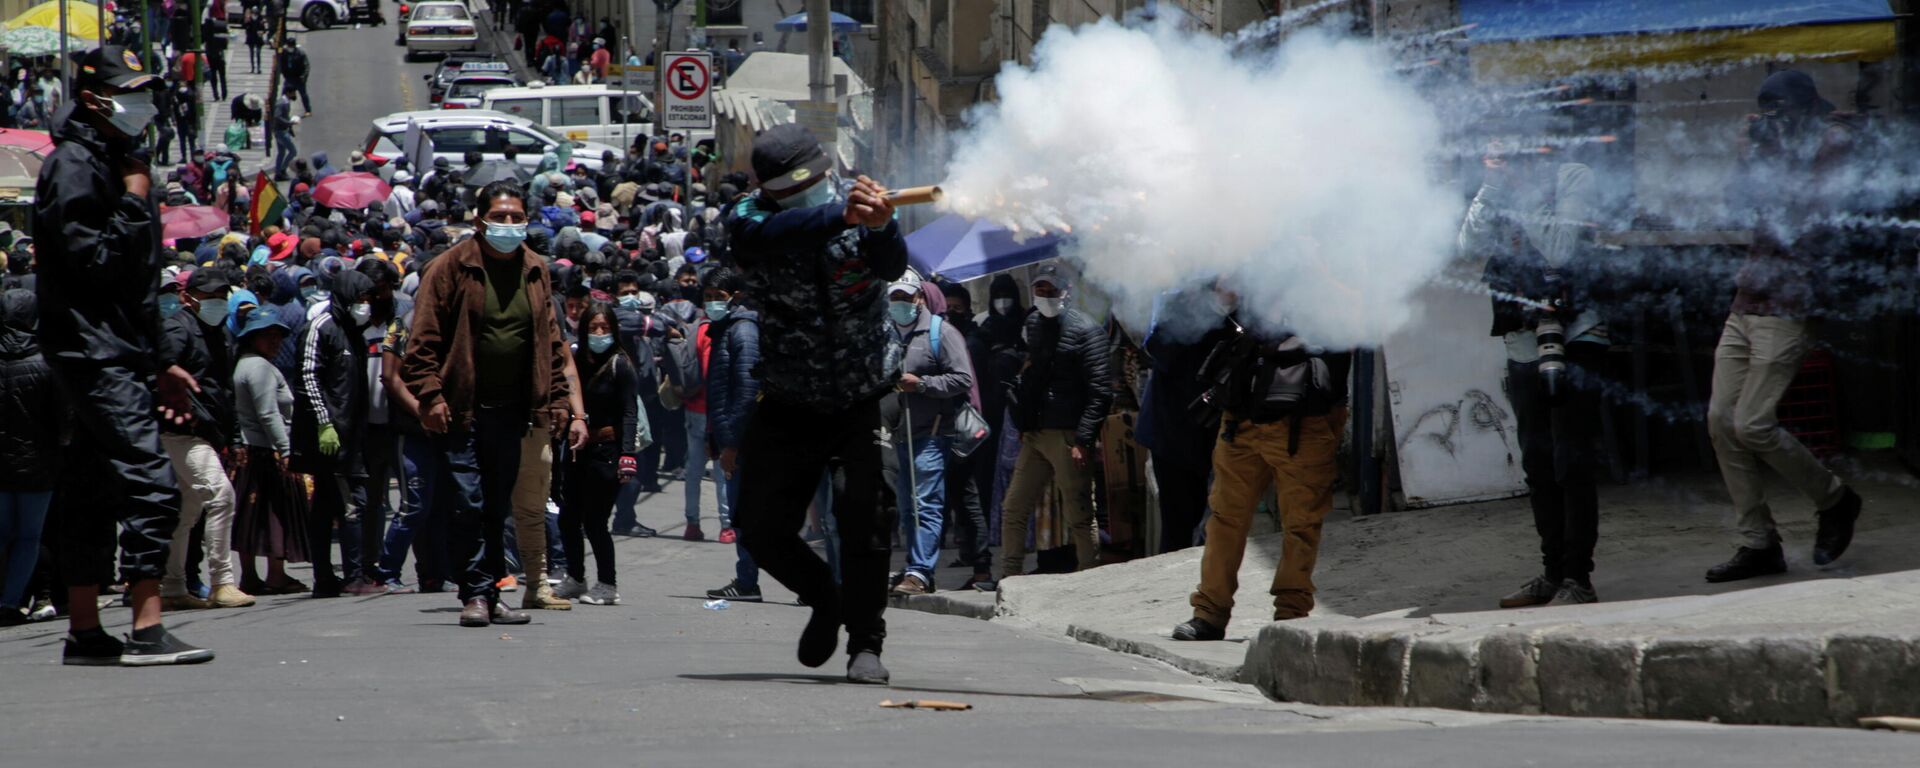 Protestas en Bolivia - Sputnik Mundo, 1920, 23.02.2021